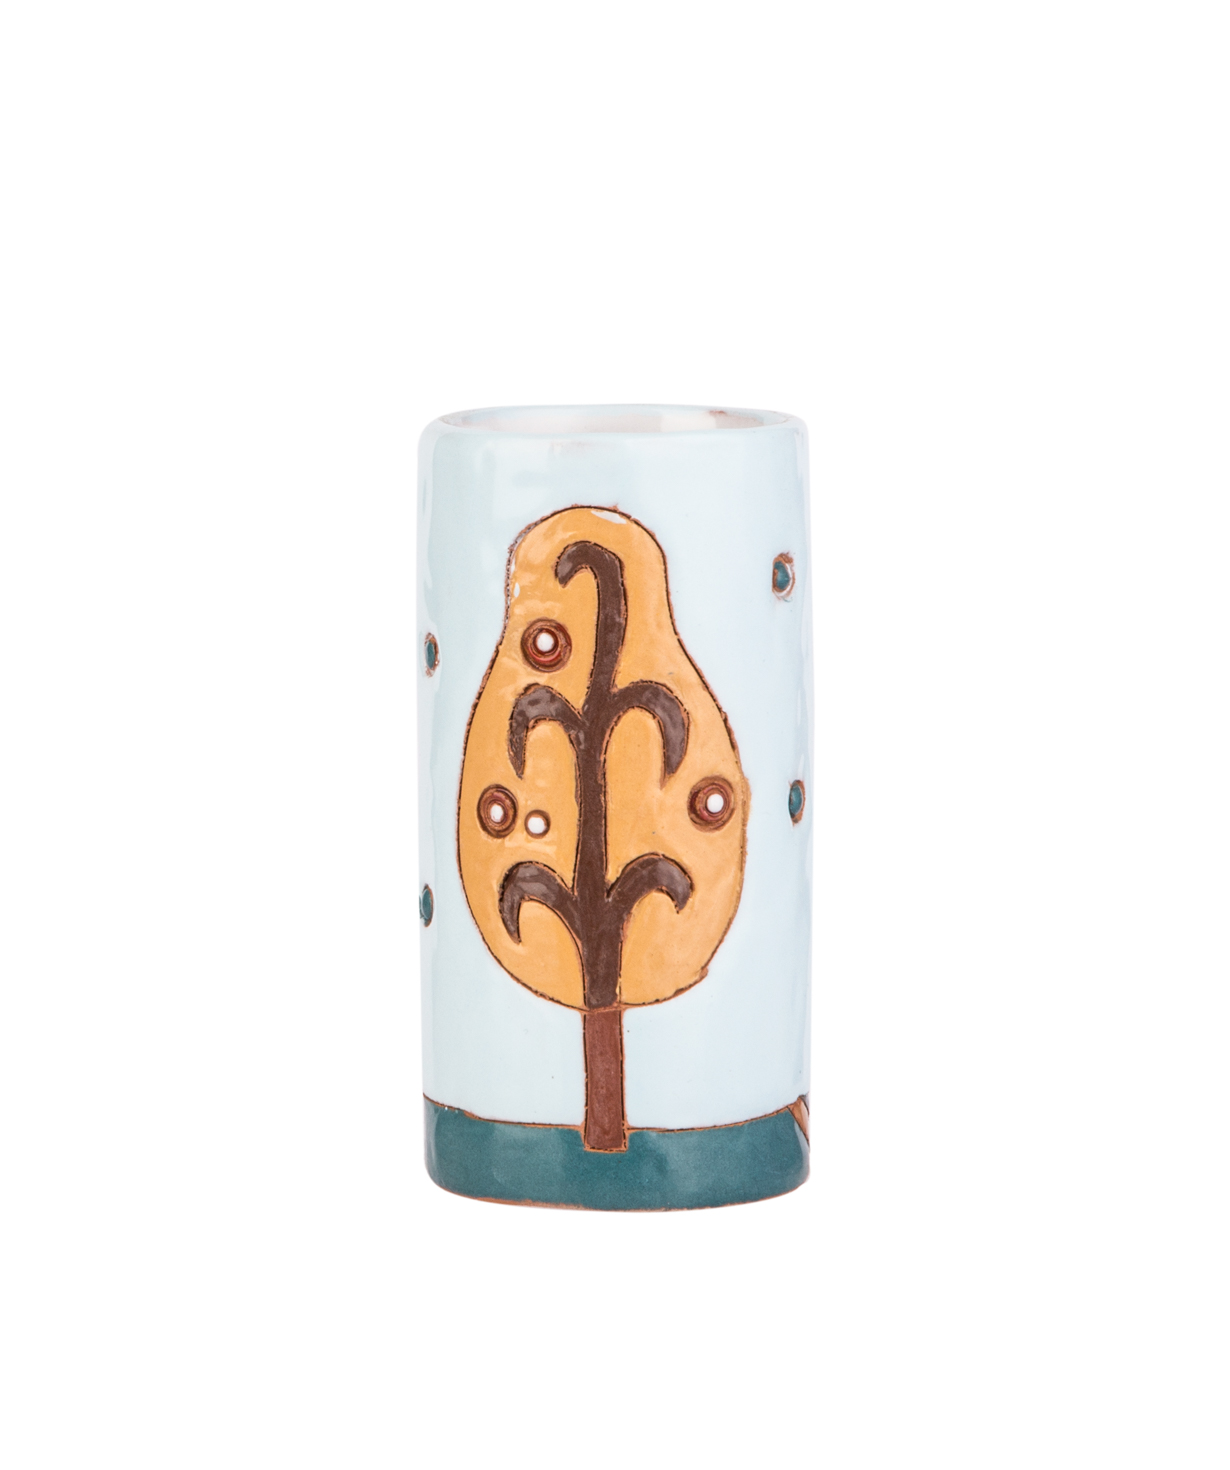 Բաժակ «Nuard Ceramics» տեկիլայի, Ծառեր №2